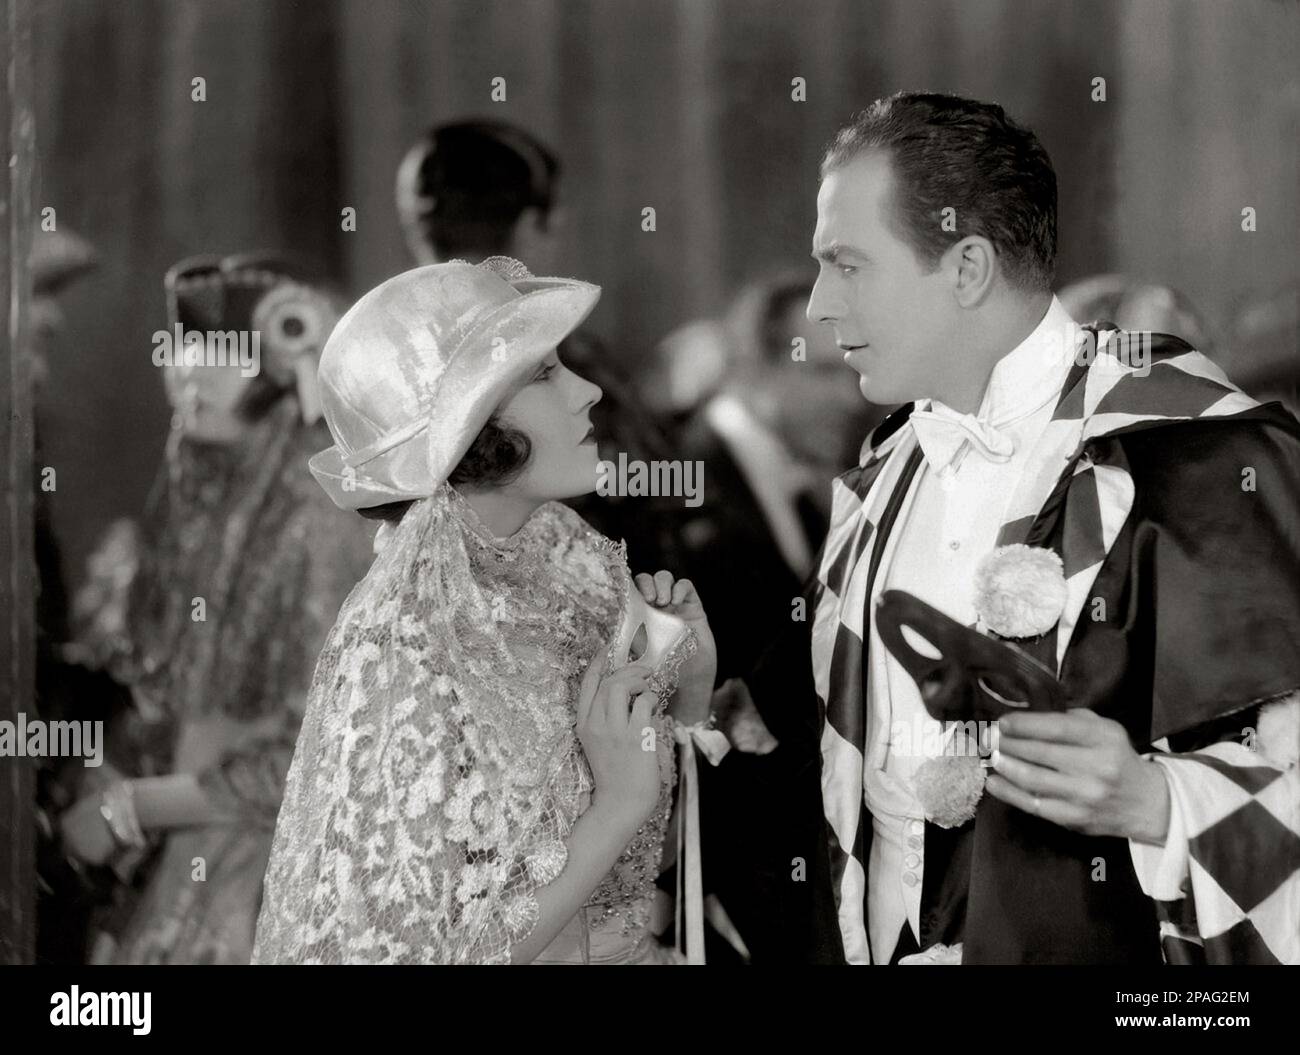 1925 Ca : die Filmschauspielerin GLORIA SWANSON ( Chicago 1898 - New York 1983 ) , die Schöpfung mit dem schottisch-kanadischen Schauspieler Matheson lang ( 1879 - 1948 ) In einem unbekannten Film - FILM - KINO - attrice cinematografica - VAMP - DIVA - DIVINA - GÖTTLICH - Schleier - Velo - Hut - cappello - pizzo - Spitze - Masquerade - maschera - Maske - carnevale - Karneval - Bal Masque' - Ballo in maschera - profilo - Profil - Glitzer --- ARCHIVIO GBB Stockfoto